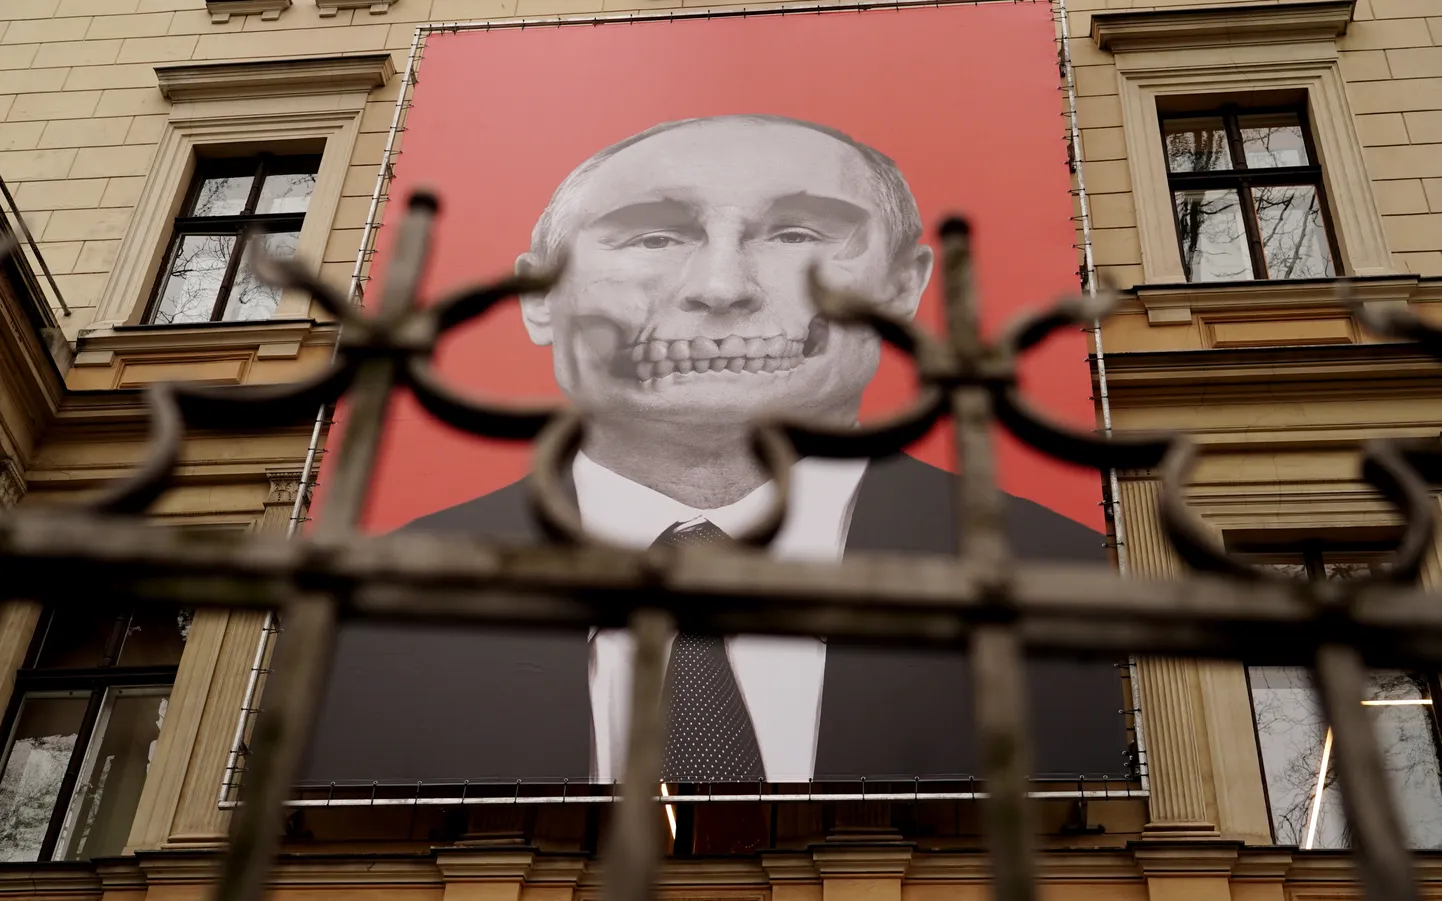 Антивоенный плакат напротив здания Посольства РФ в Риге